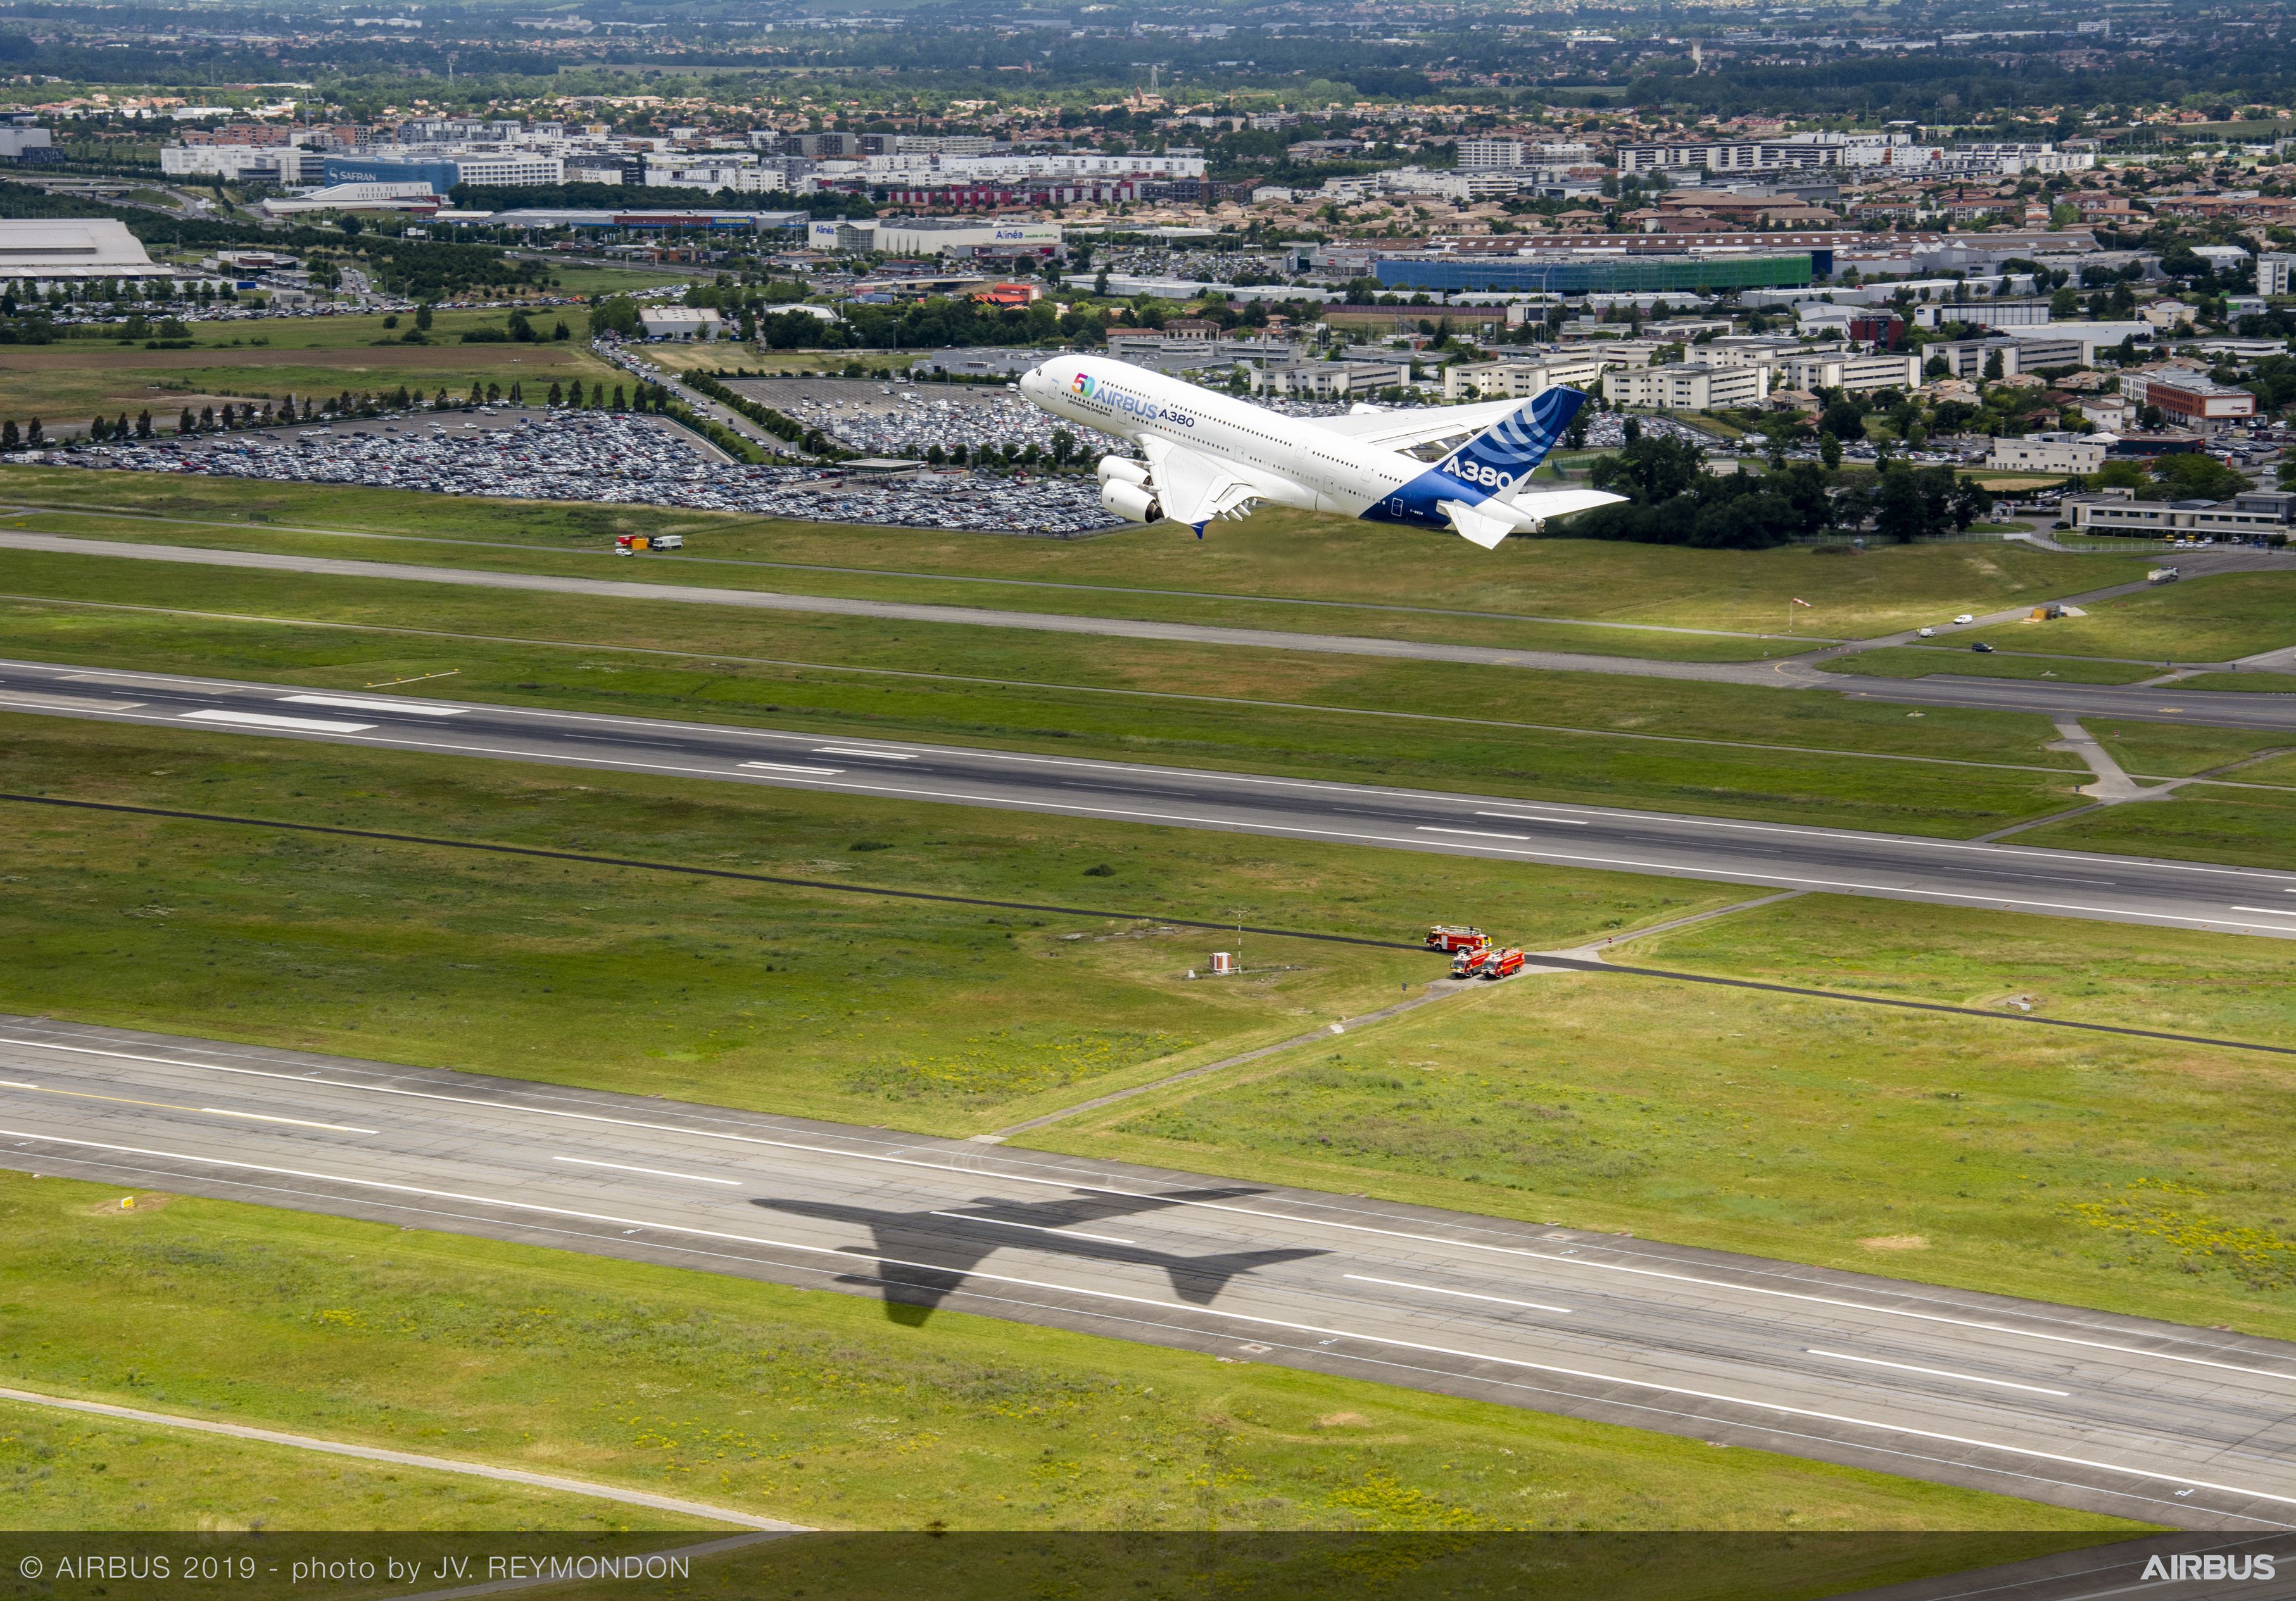 Happy Birthday Airbus! 50 Jahre - und auf dem Weg, Boeing zu überholen! Da kann man schon mal eine A380 zur Feier umlackieren und fliegen lassen! / Bild-Quelle: airbus.com